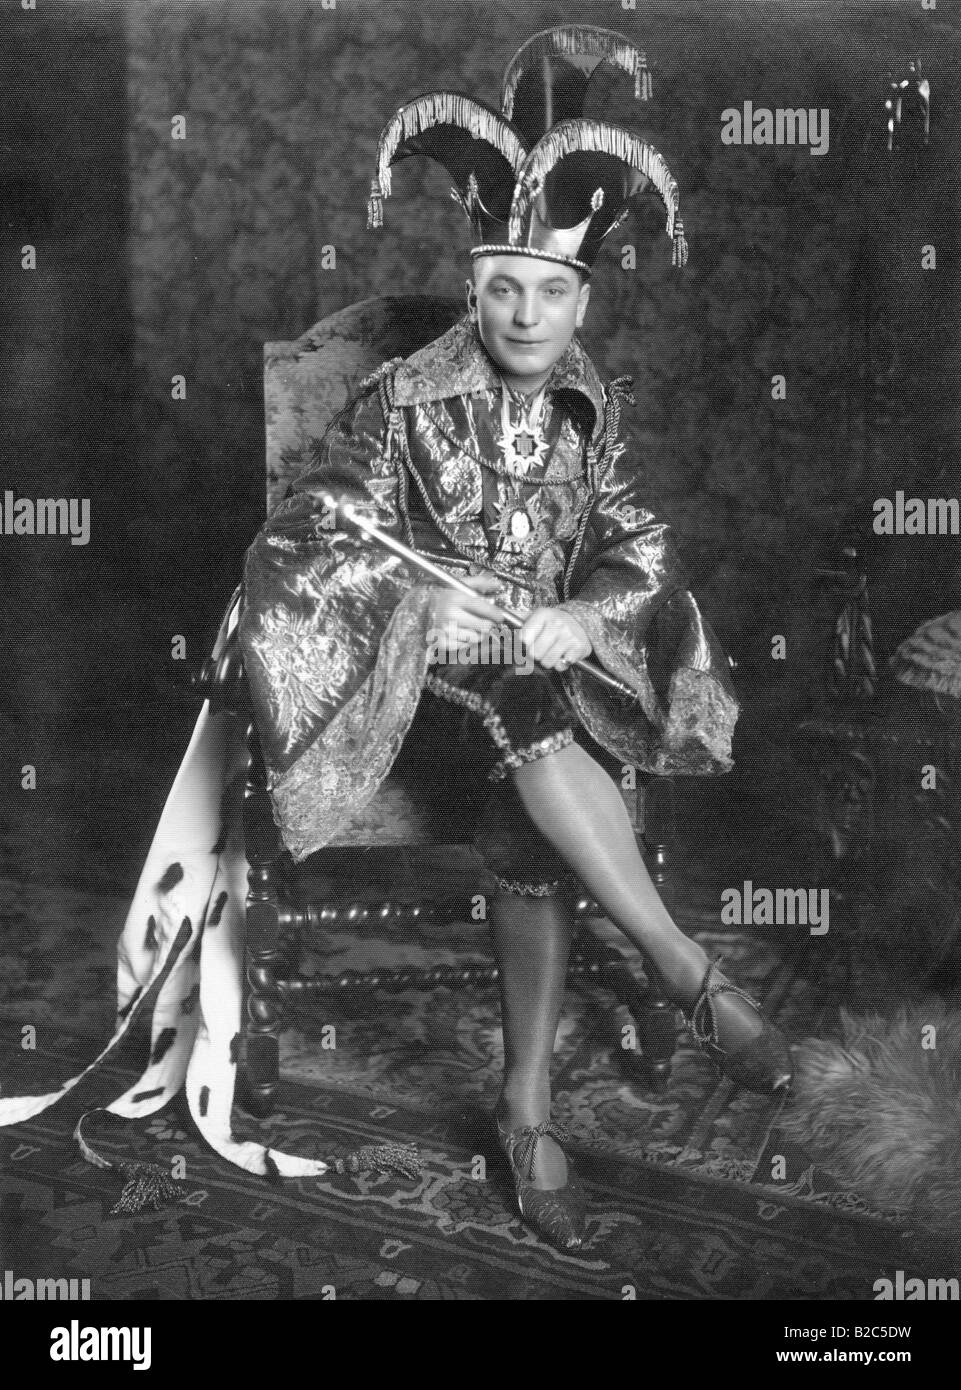 Mann verkleidet als König, historische Bild von ca. 1920 Stockfoto